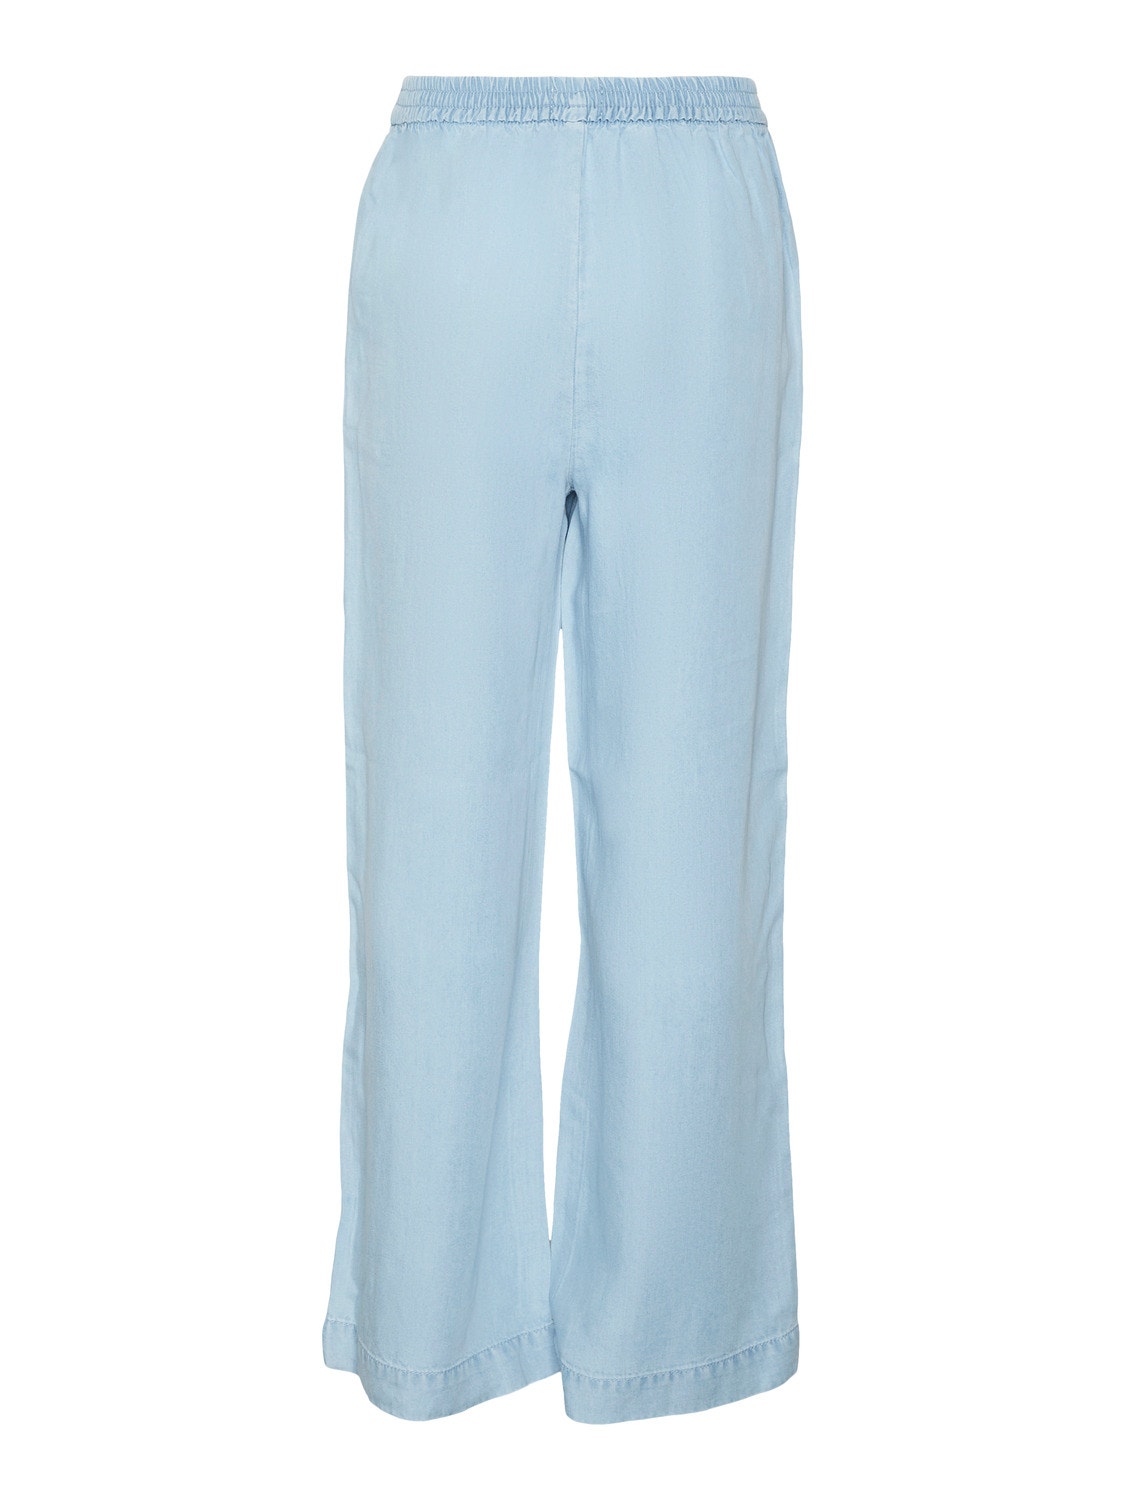 Vero Moda VMBREE Trousers -Light Blue Denim - 10307404